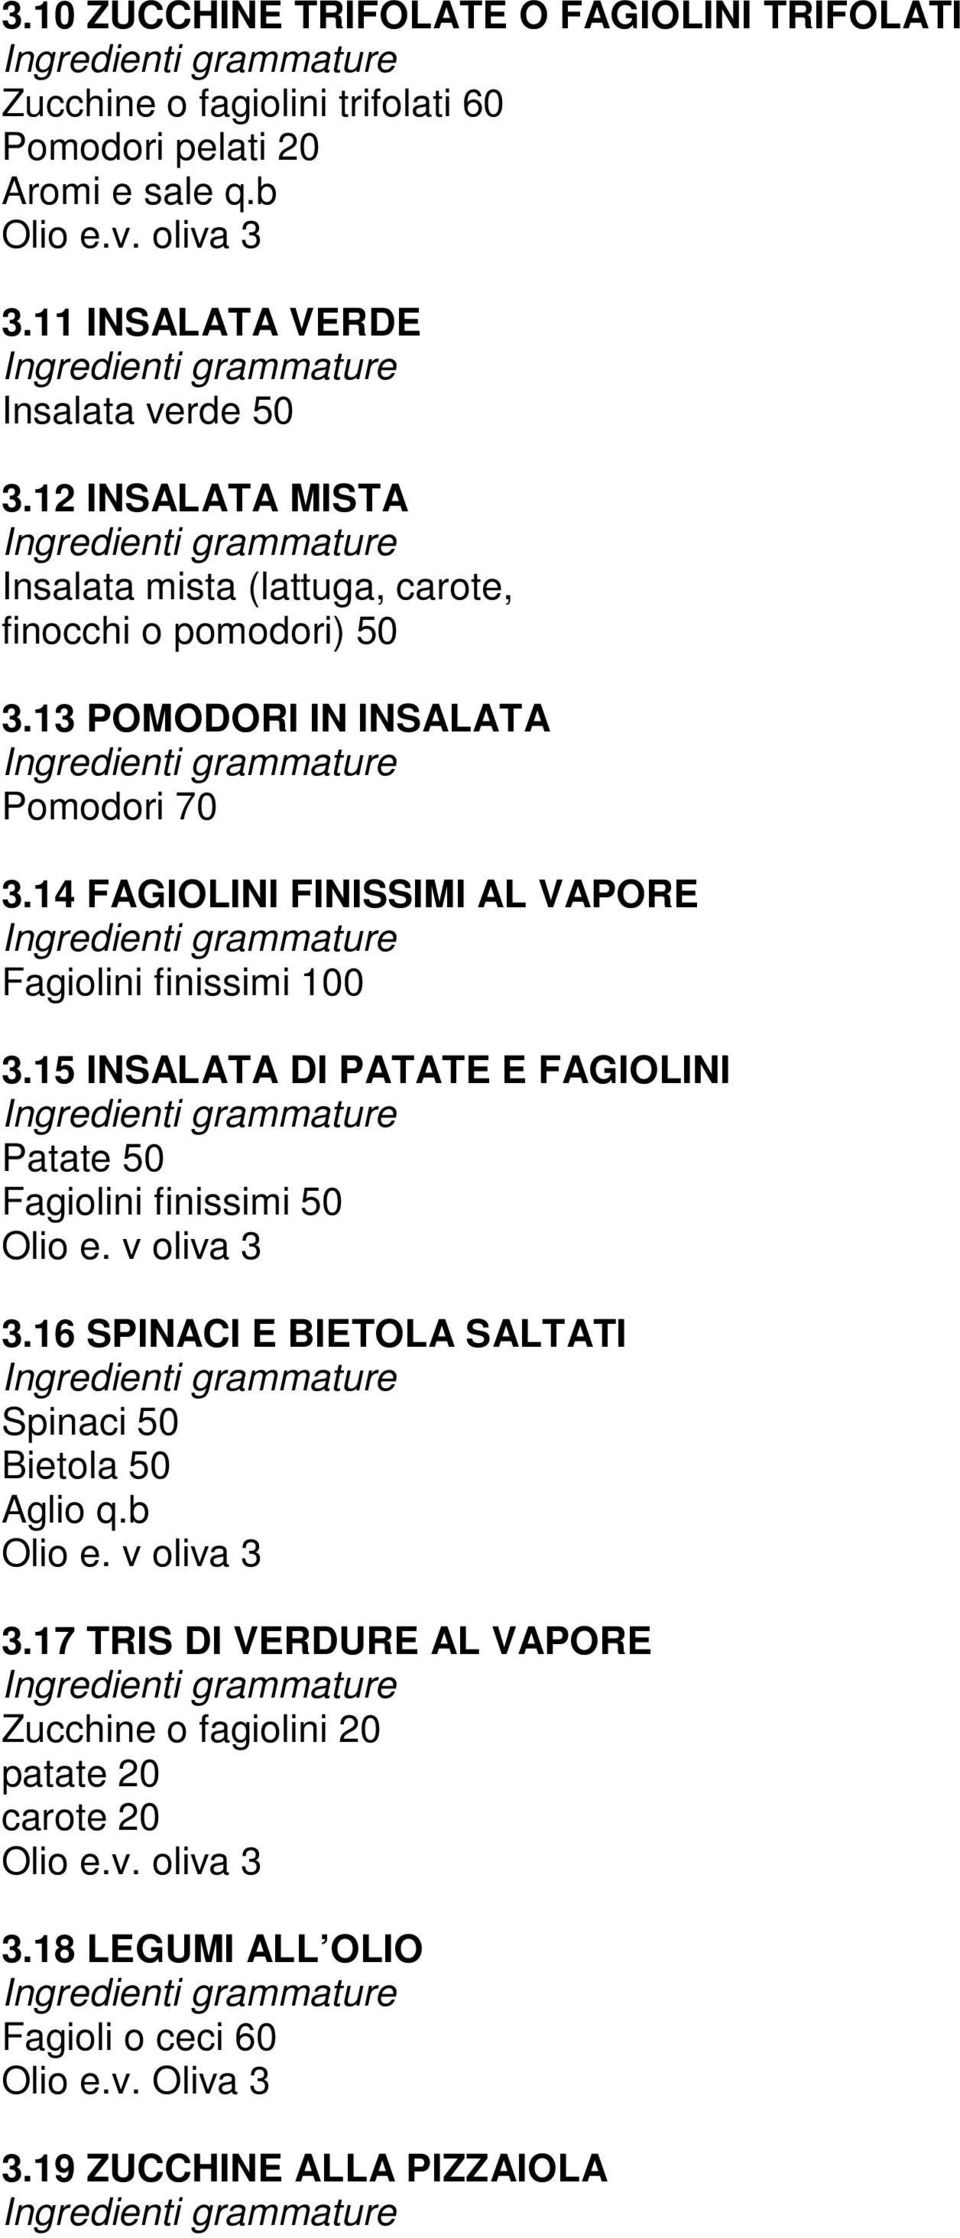 14 FAGIOLINI FINISSIMI AL VAPORE Fagiolini finissimi 100 3.15 INSALATA DI PATATE E FAGIOLINI Patate 50 Fagiolini finissimi 50 Olio e. v oliva 3 3.